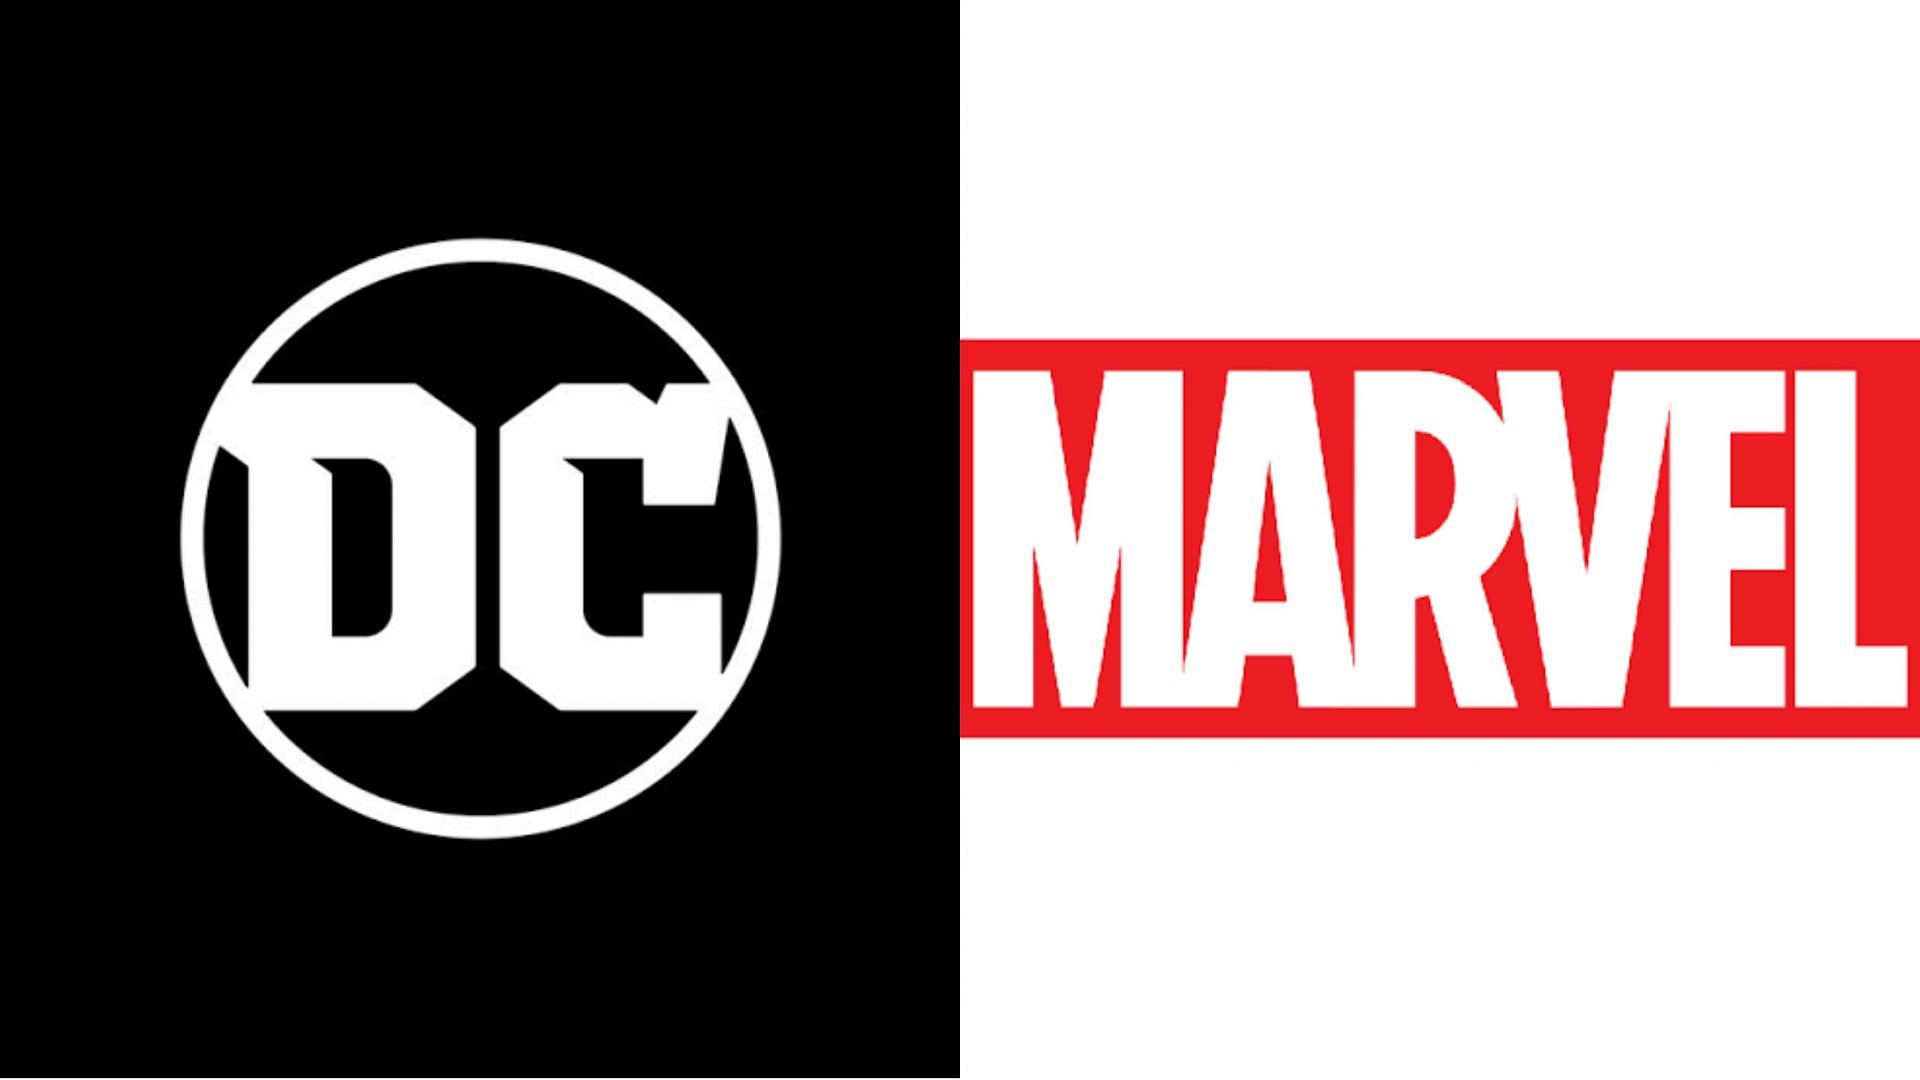 DC and Marvel (Image via DC Comics and Marvel comics)